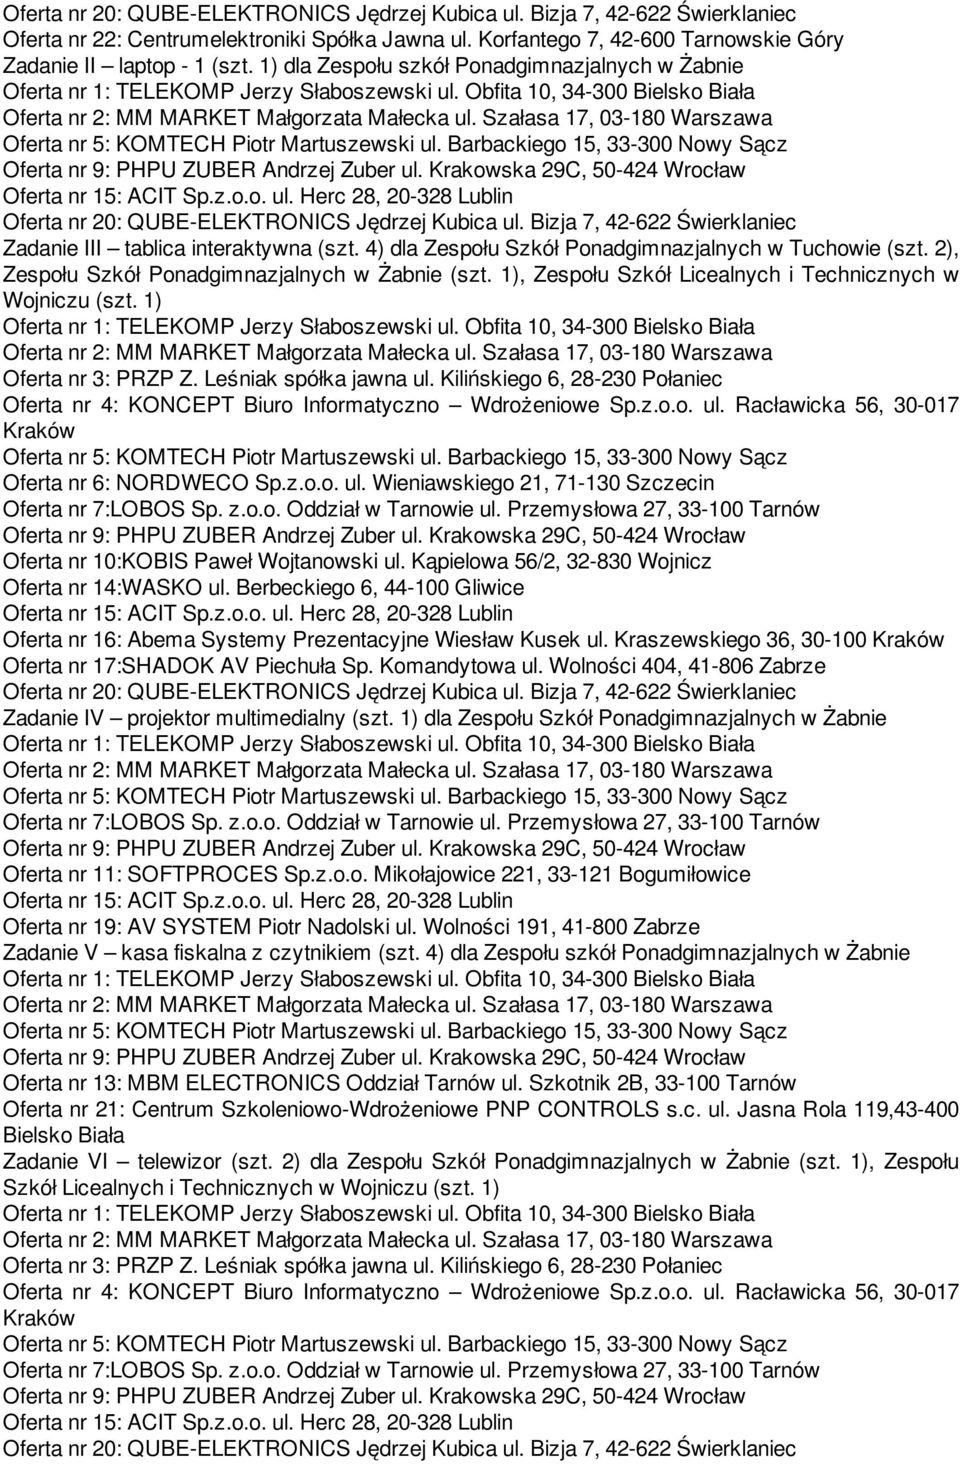 1), Zespołu Szkół Licealnych i Technicznych w Wojniczu (szt. 1) Oferta nr 3: PRZP Z. Leśniak spółka jawna ul. Kilińskiego 6, 28-230 Połaniec Oferta nr 4: KONCEPT Biuro Informatyczno Wdrożeniowe Sp.z.o.o. ul. Racławicka 56, 30-017 Kraków Oferta nr 6: NORDWECO Sp.